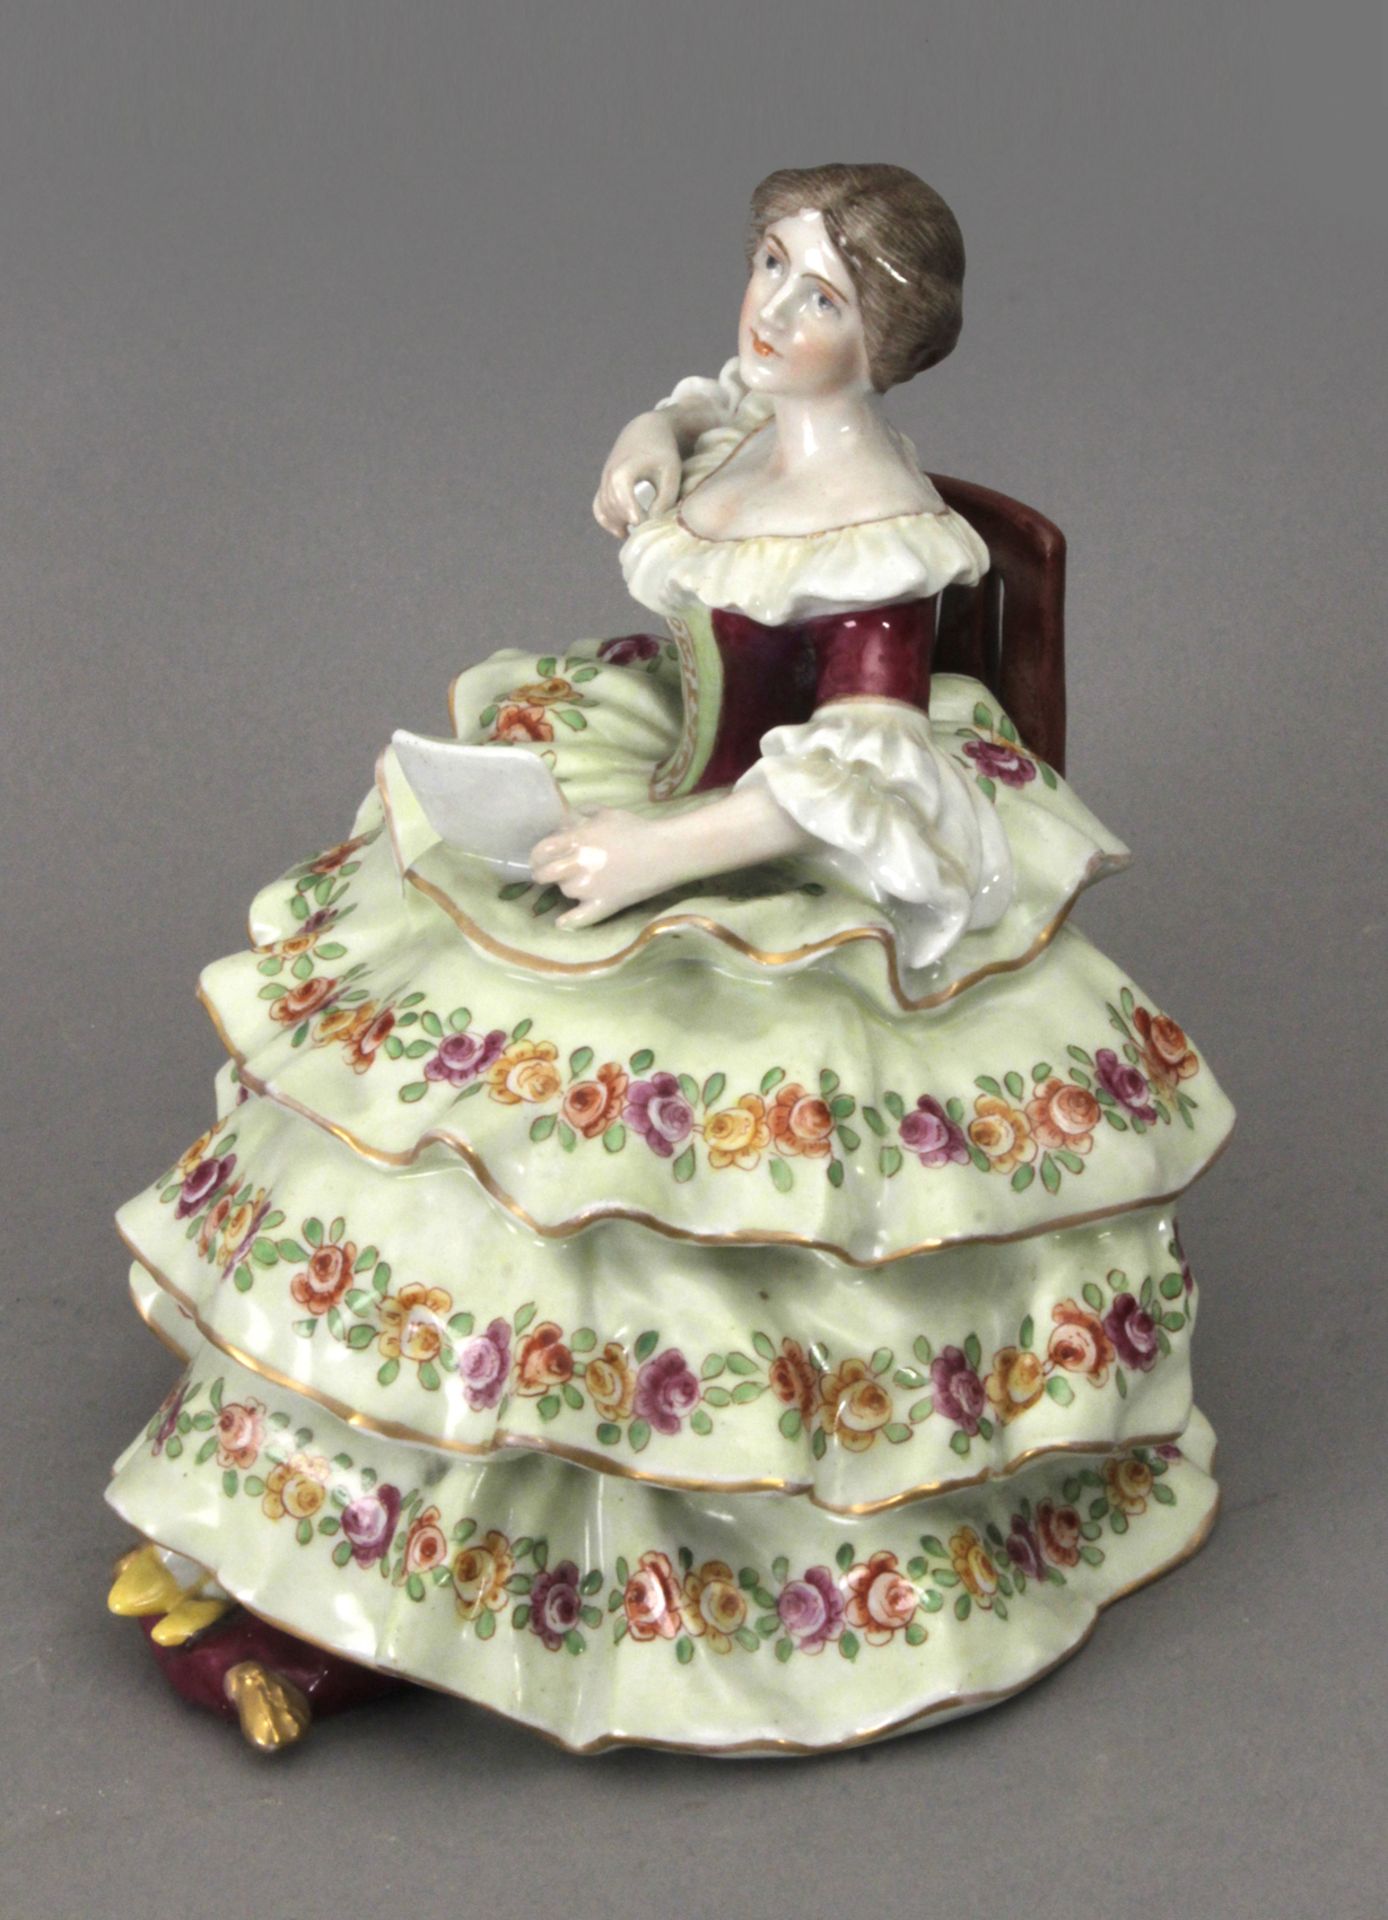 Early 20th century dame figure in Von Schierholz porcelain - Bild 2 aus 3